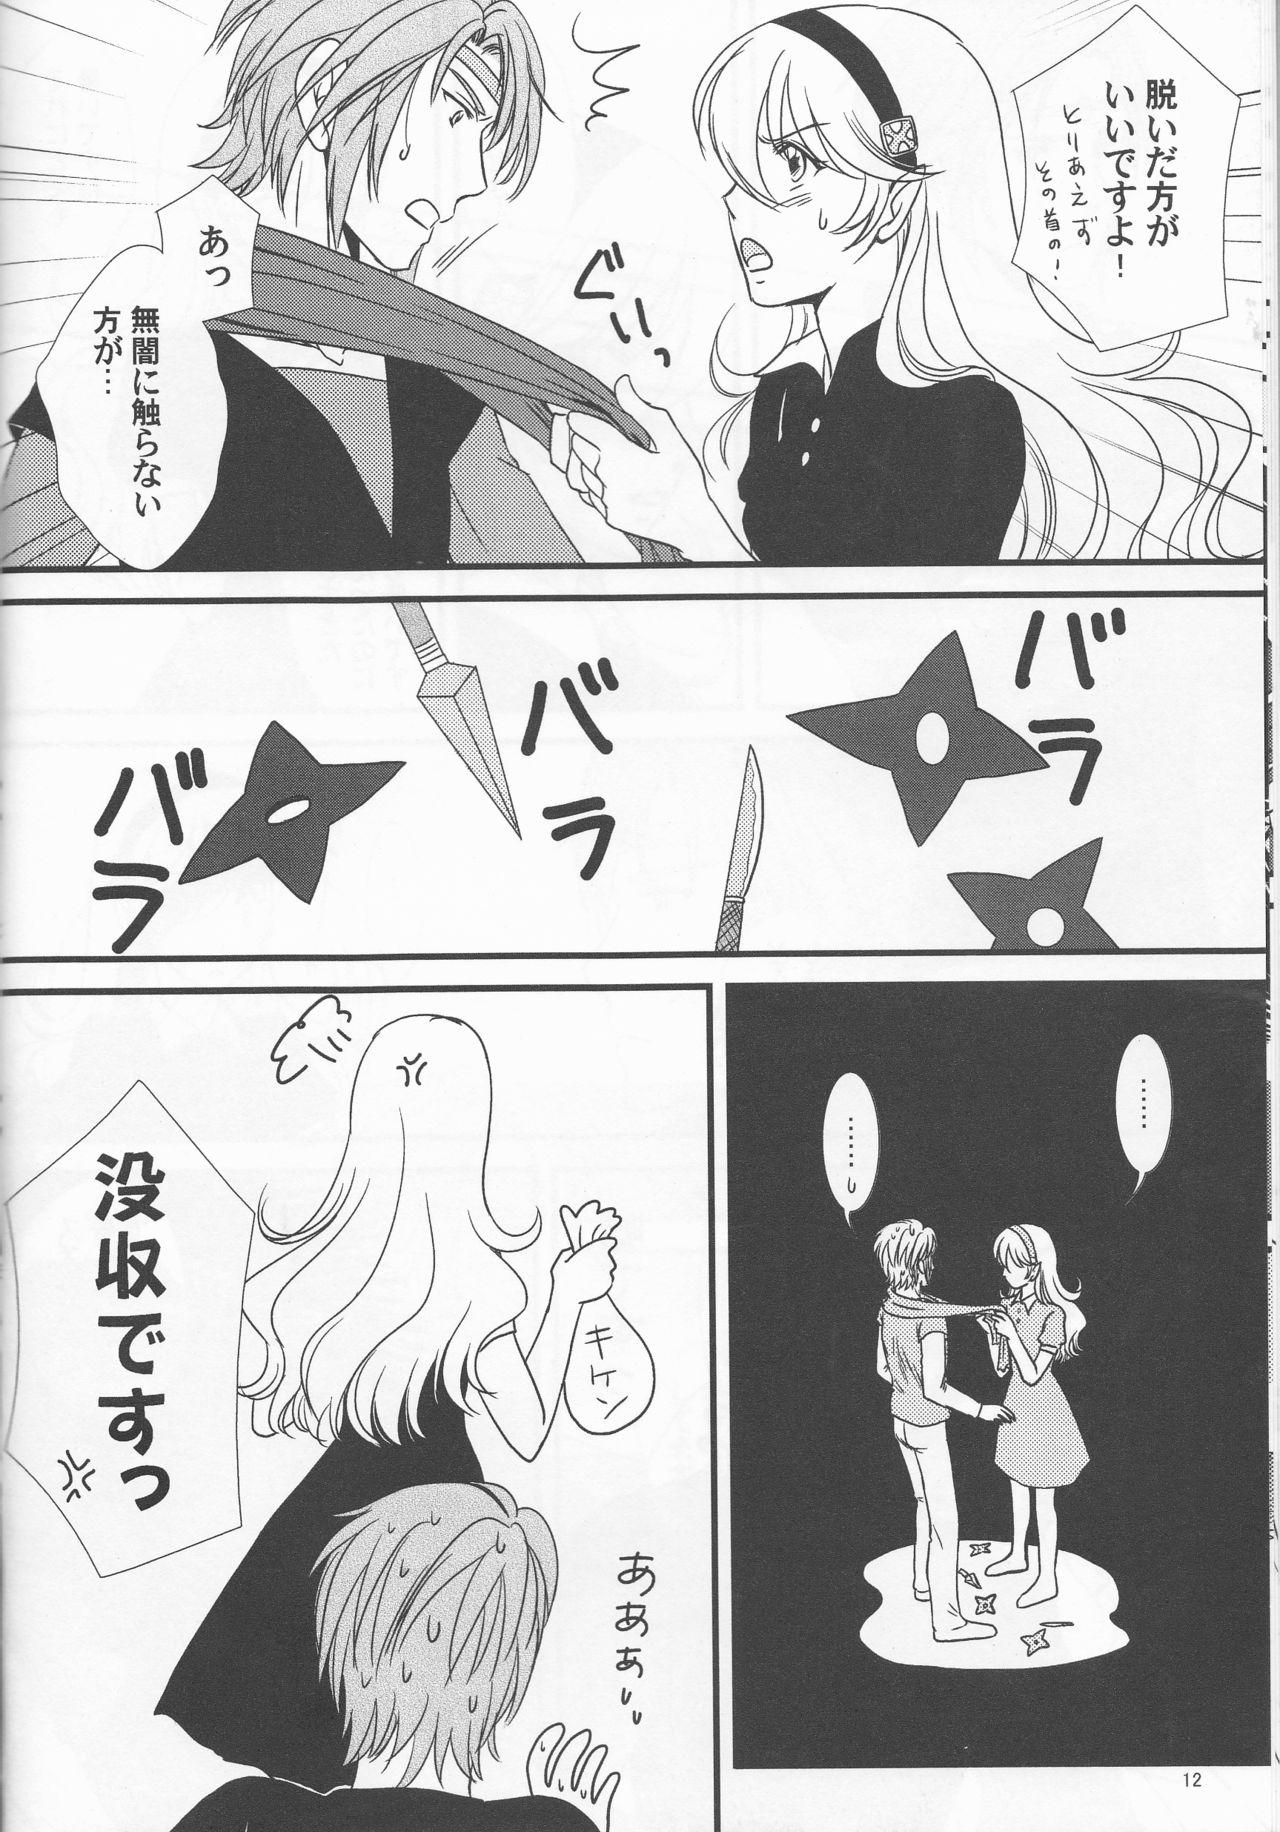 Swing Nangoku e Youkoso - Fire emblem if Story - Page 12